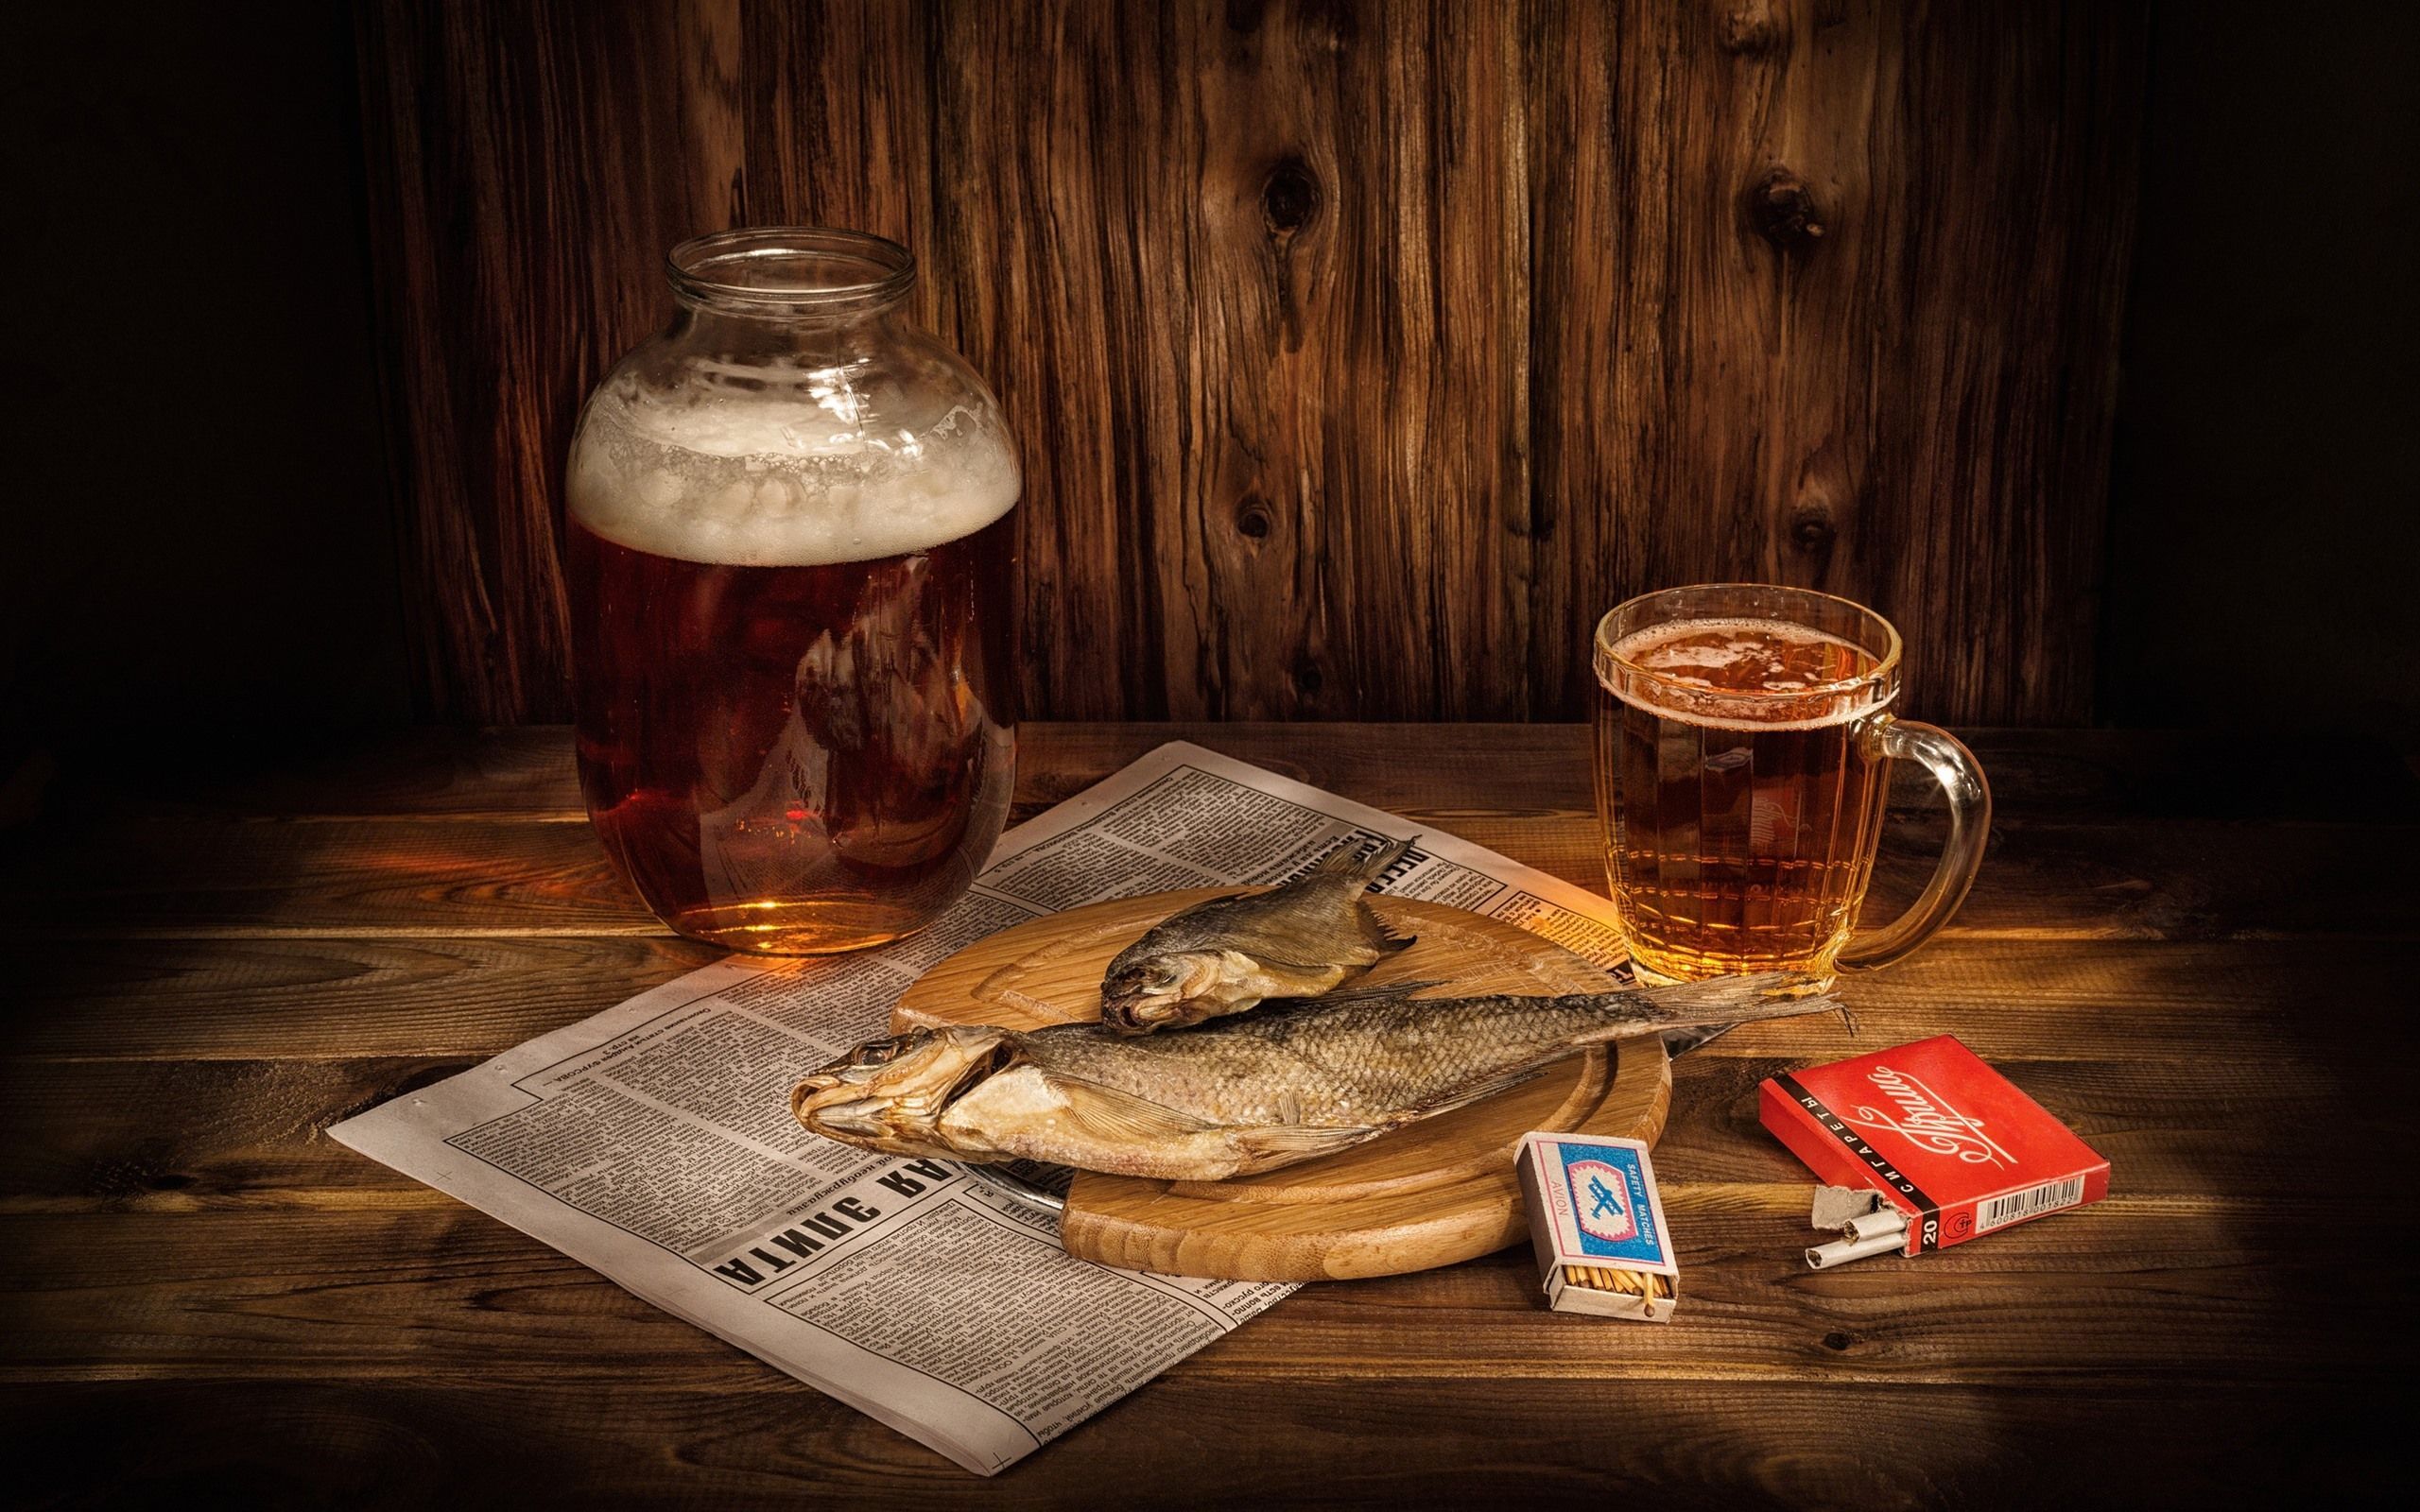  Bier Hintergrundbild 2560x1600. Bier, trockener Fisch, Zigarette, Streichholz 2560x1600 HD Hintergrundbilder, HD, Bild